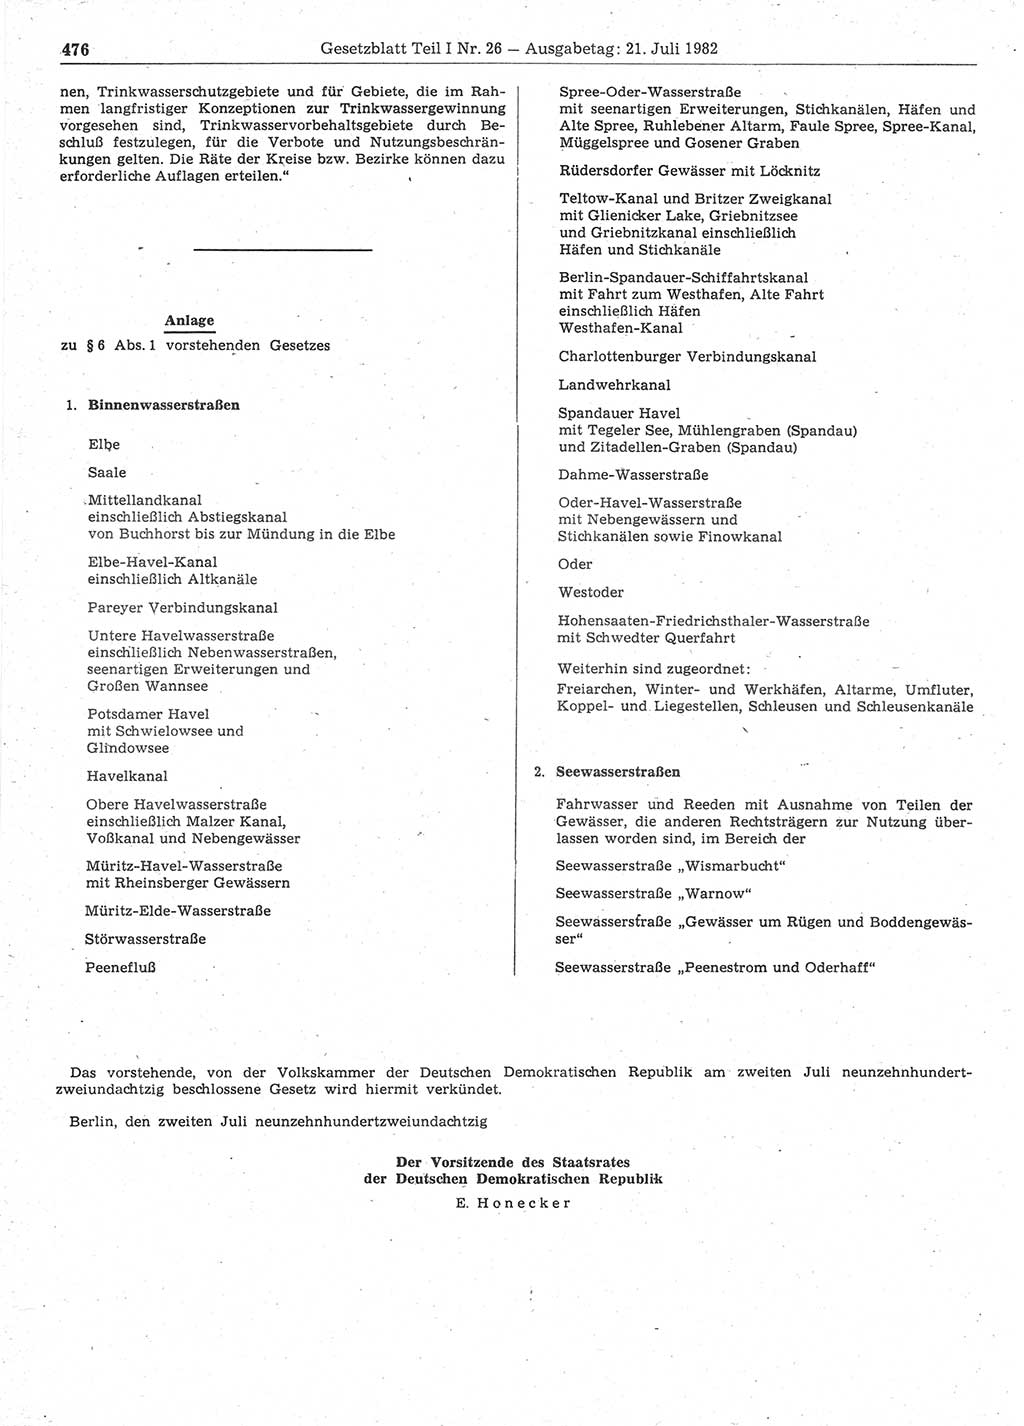 Gesetzblatt (GBl.) der Deutschen Demokratischen Republik (DDR) Teil Ⅰ 1982, Seite 476 (GBl. DDR Ⅰ 1982, S. 476)